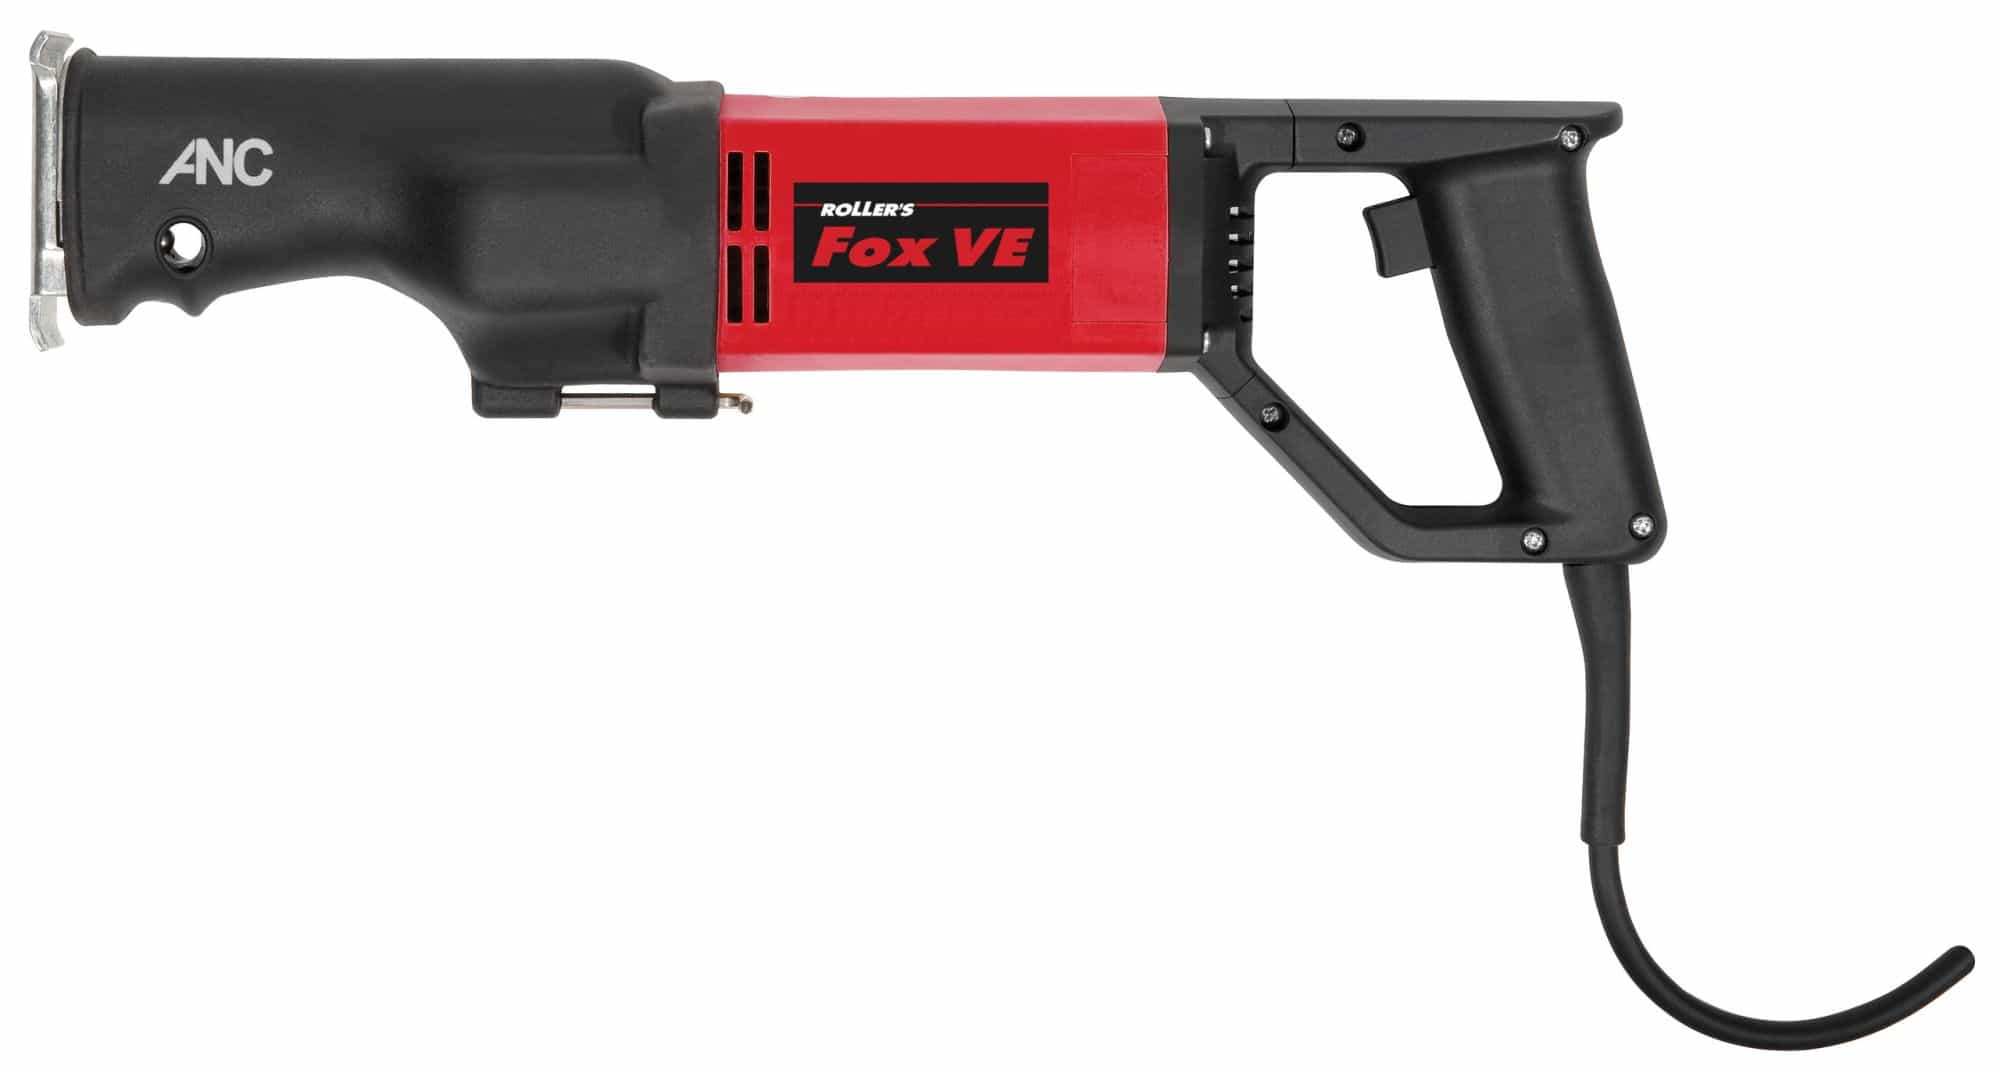 ROLLER'S Fox VE Antriebsmaschine - Elektro-Rohrsäge für Rohre bis Ø 6 Zoll, 160 mm